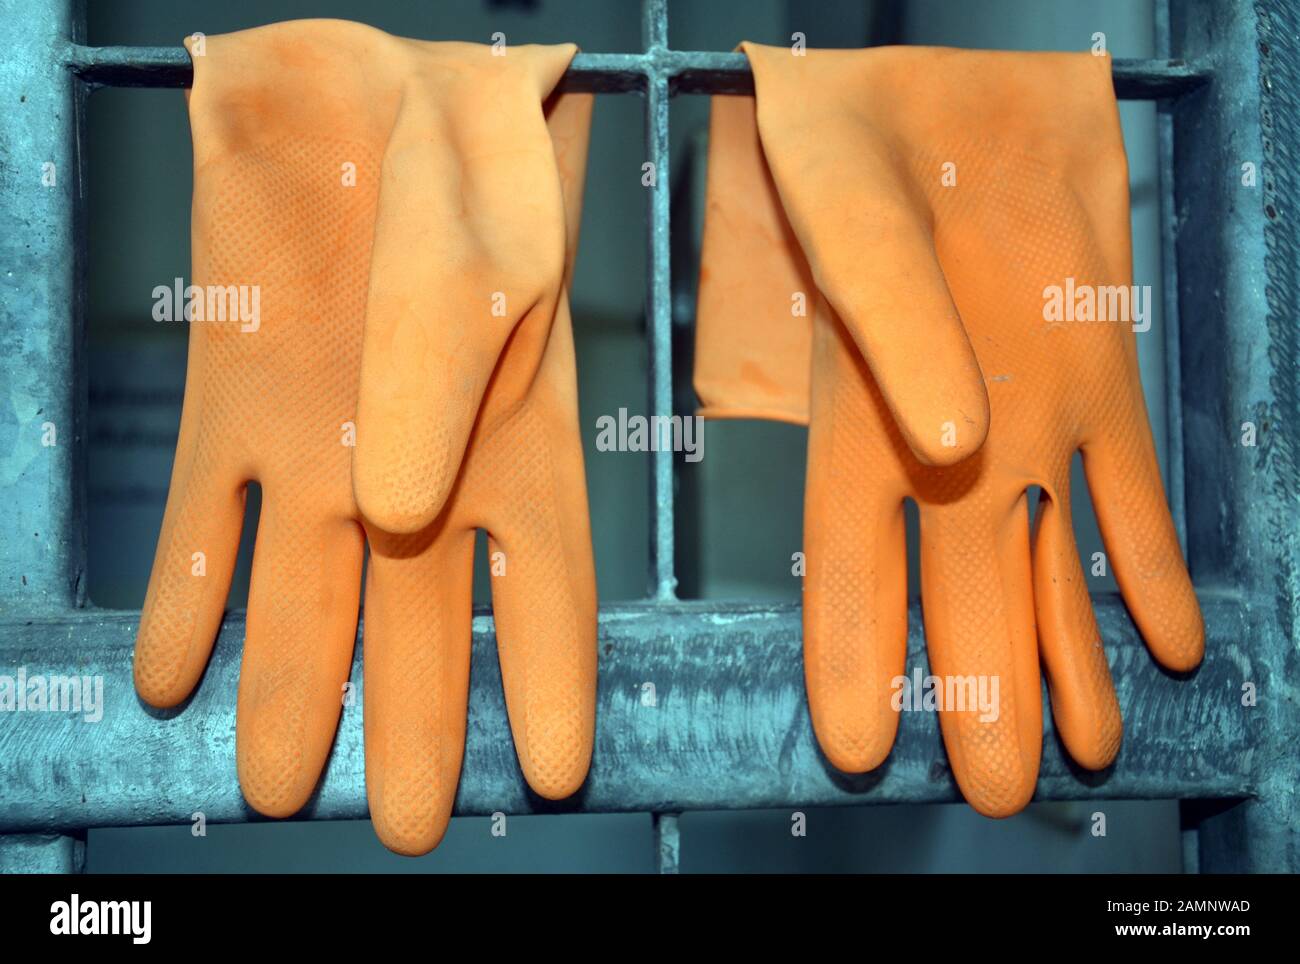 Un par de caucho naranja de lavar o limpiar los guantes de colgar a secar Foto de stock